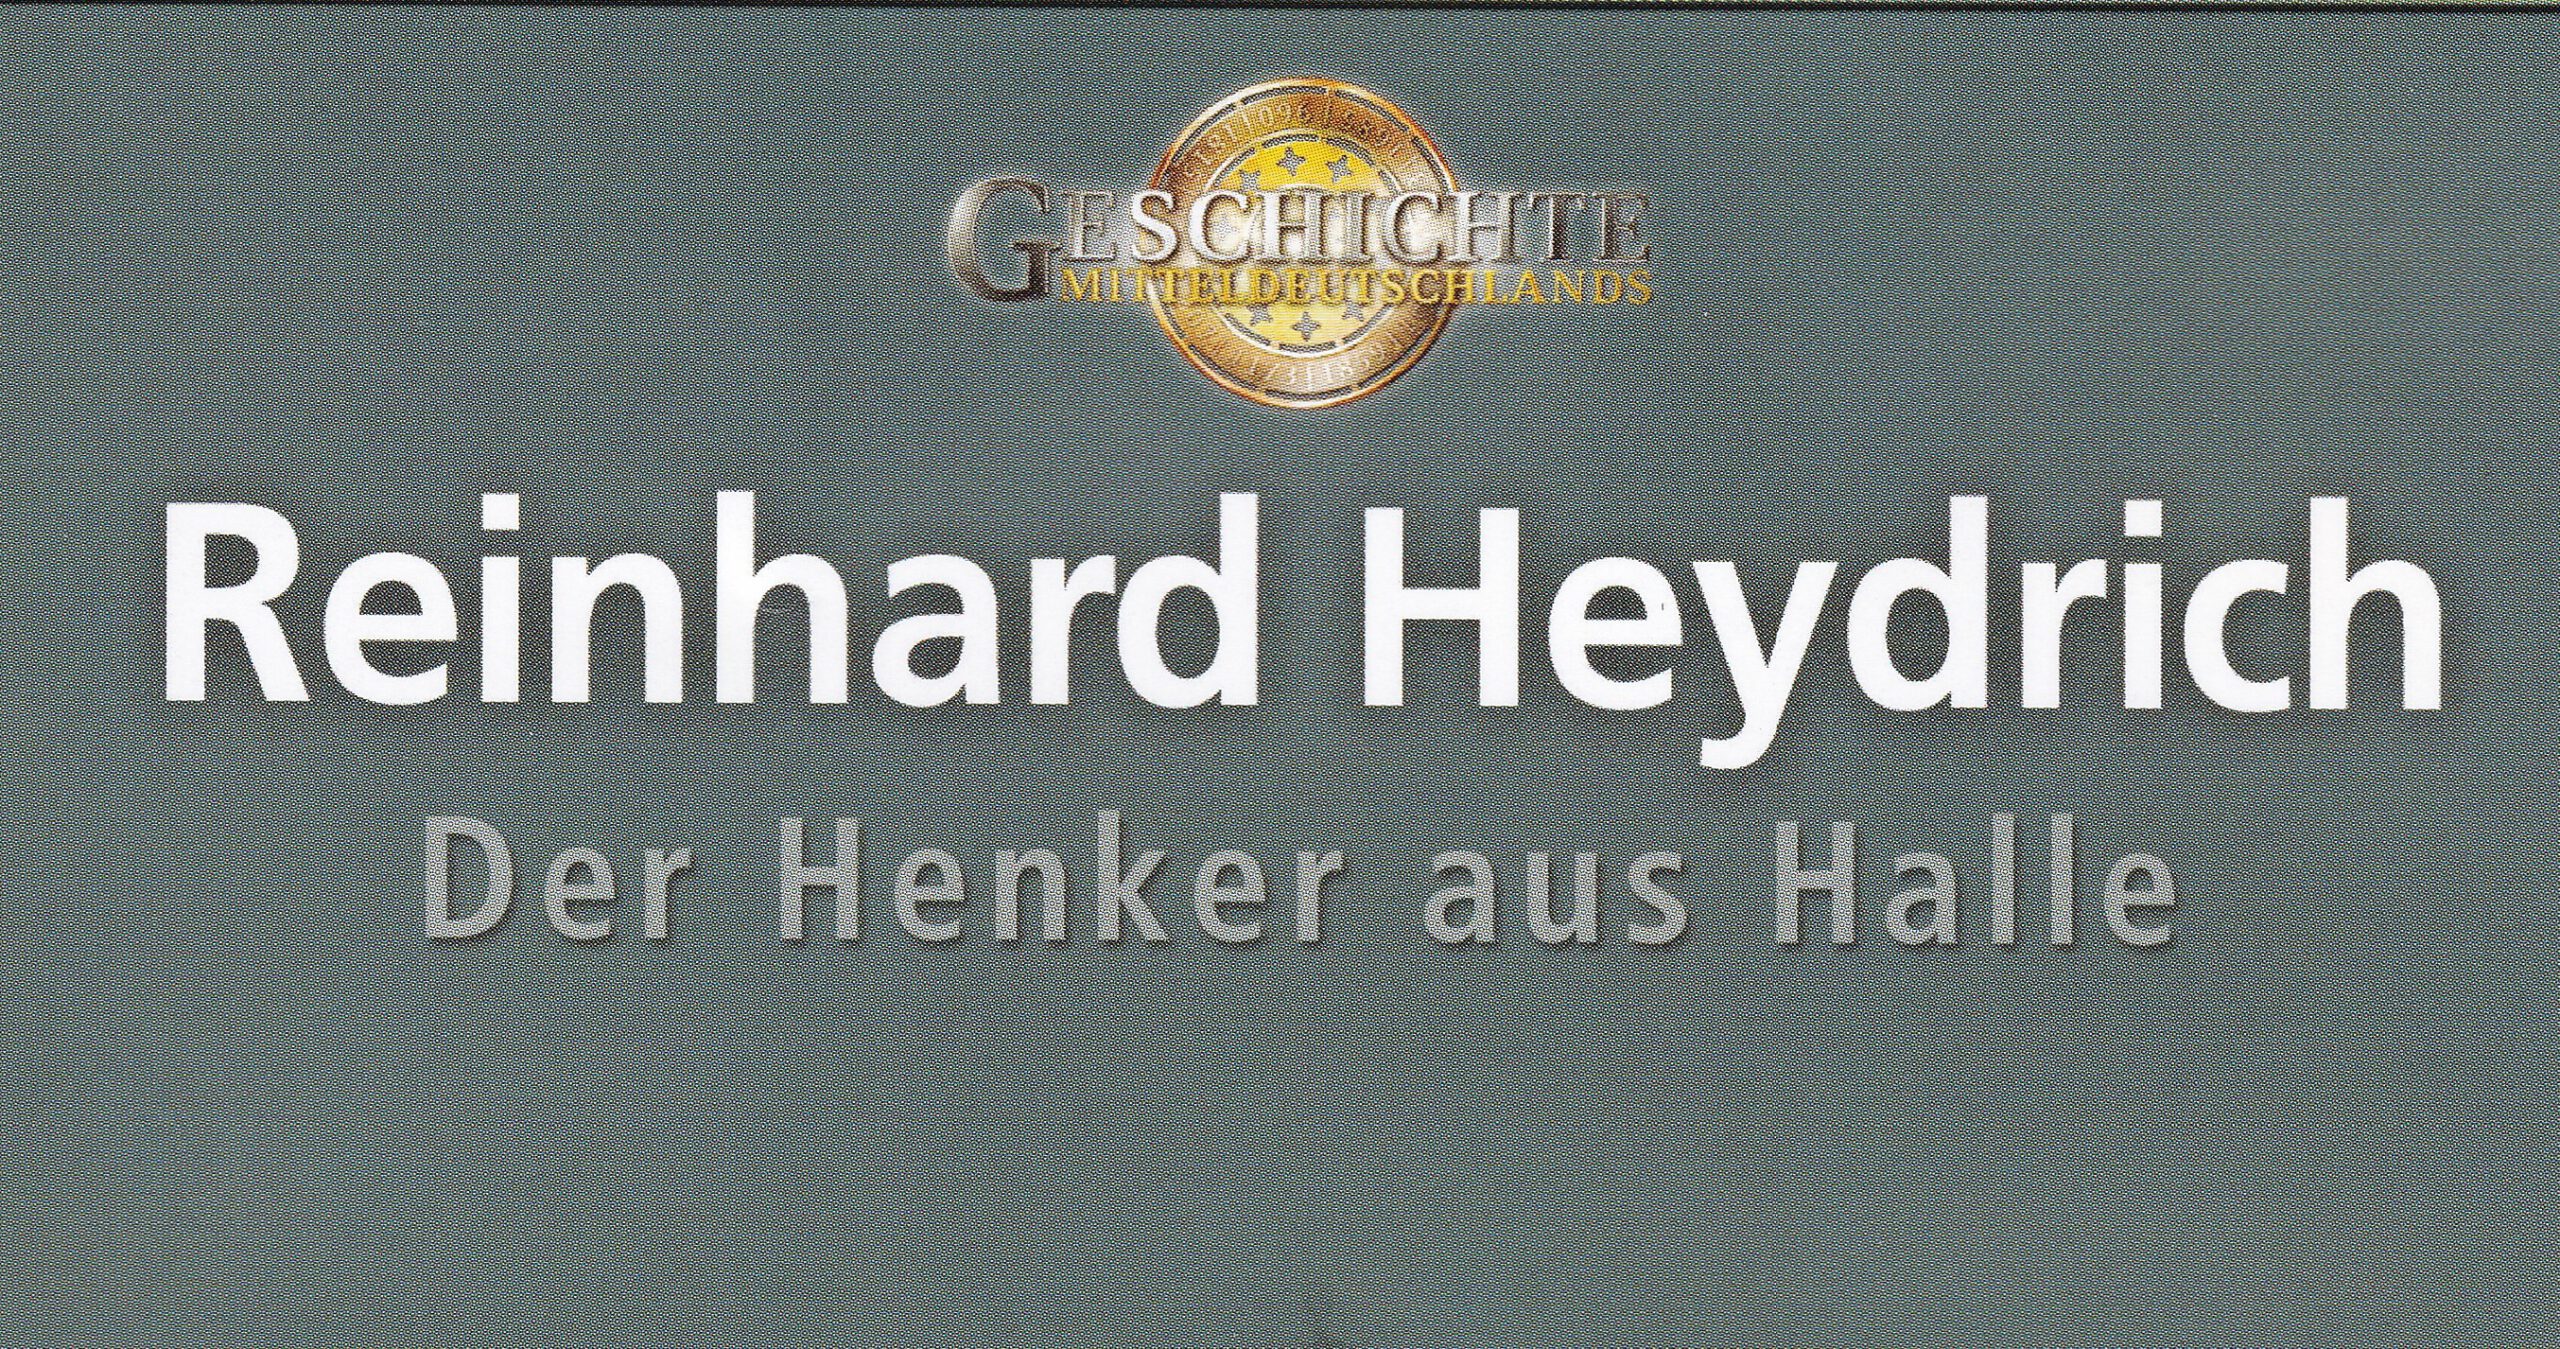 Die Geschichte Mitteldeutschlands I Reinhard Heydrich – Der Henker aus Halle